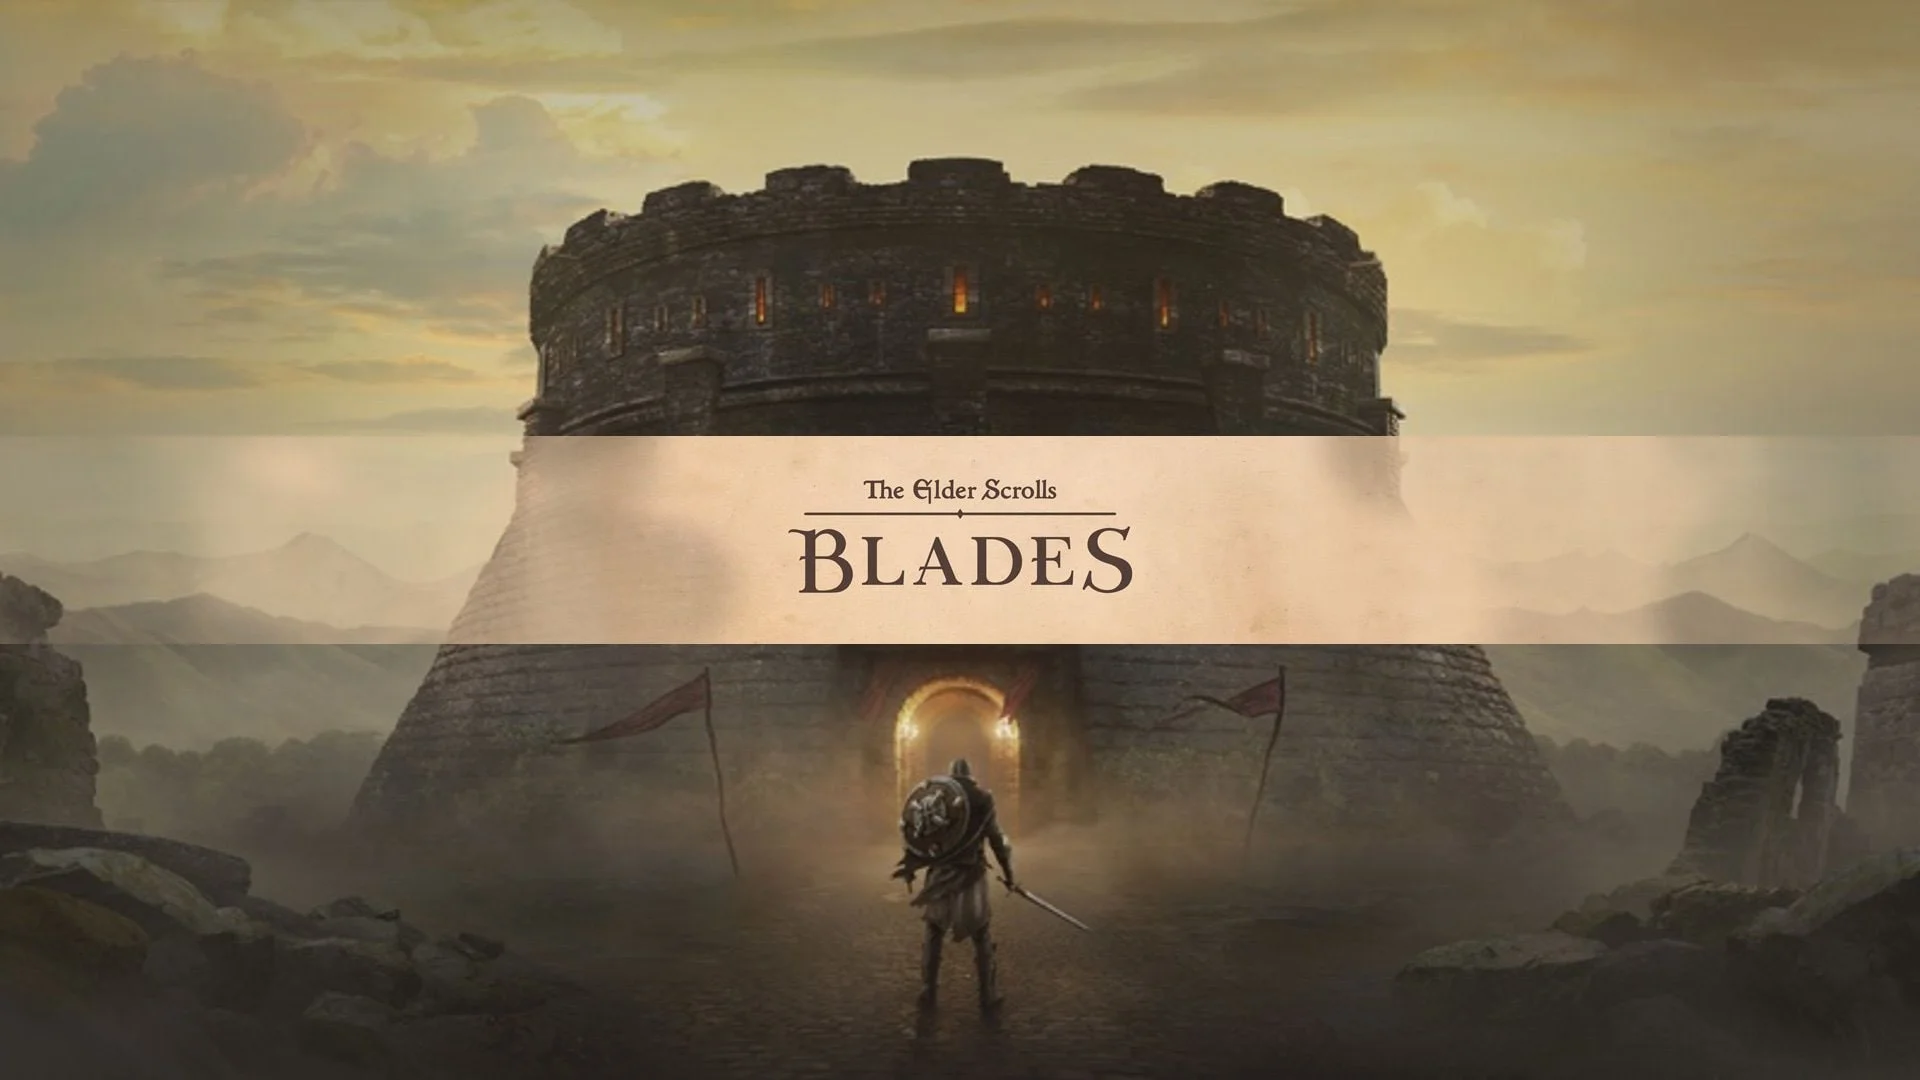 Превью The Elder Scrolls: Blades. Клинки и сундуки - изображение обложка